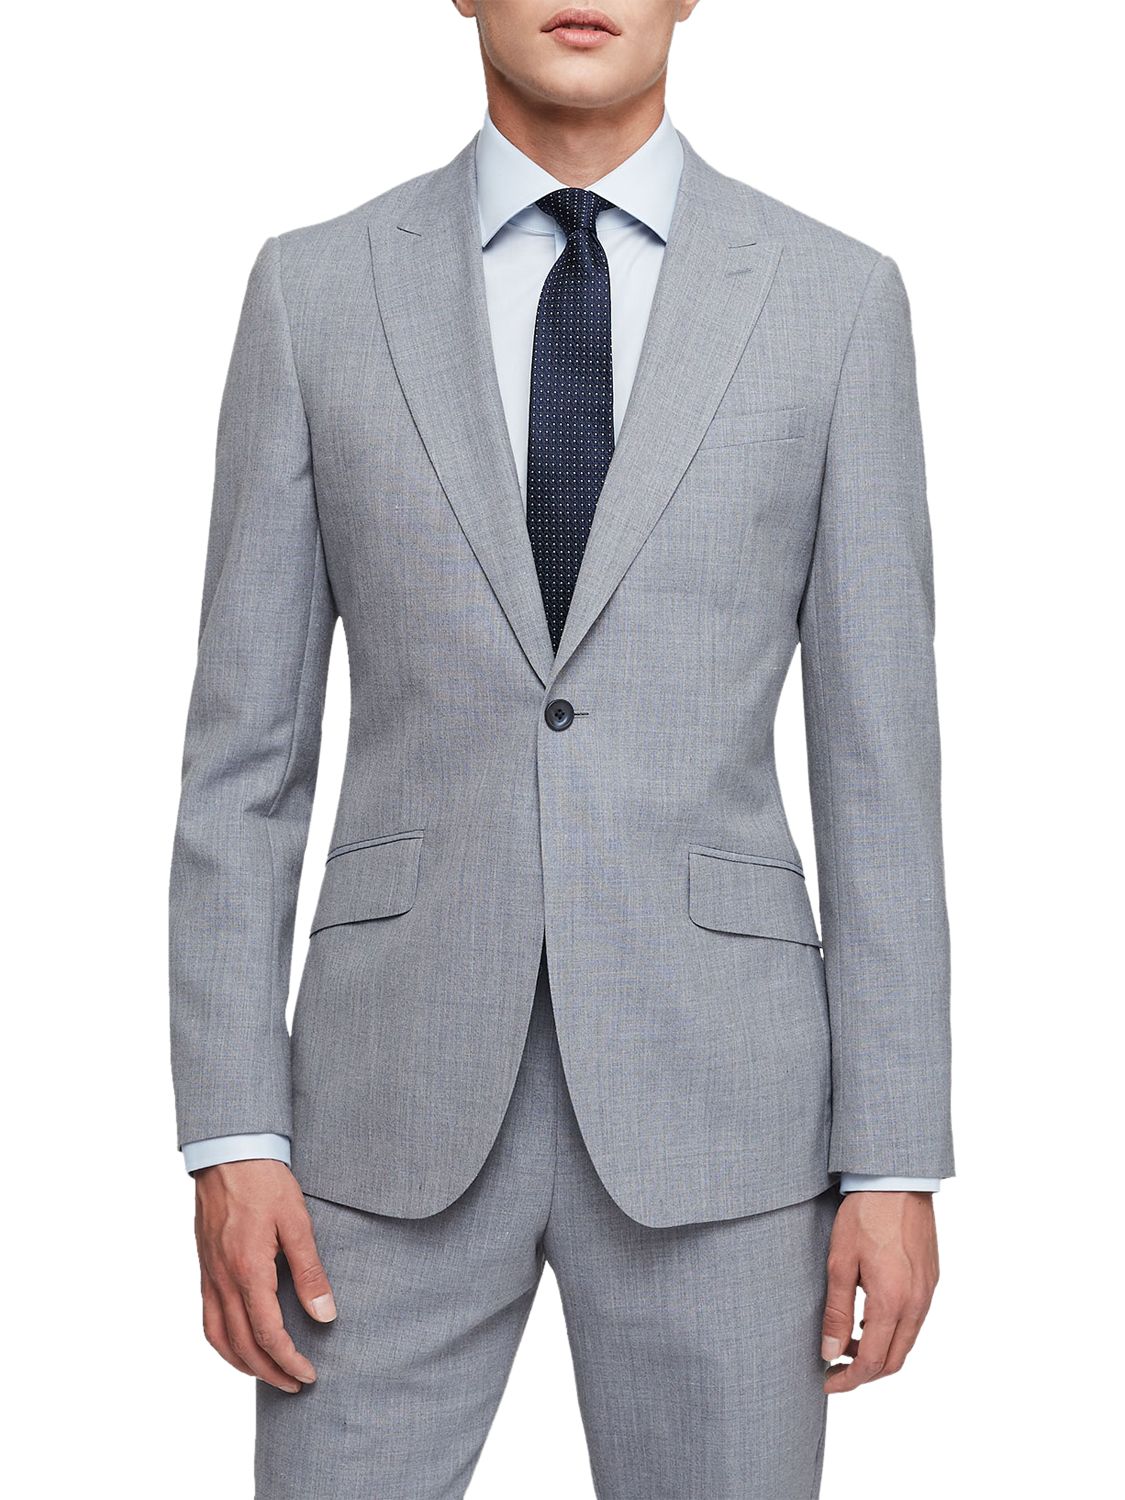 Reiss Rover Peak Lapel Modern Fit Suit Jacket, Soft Blue